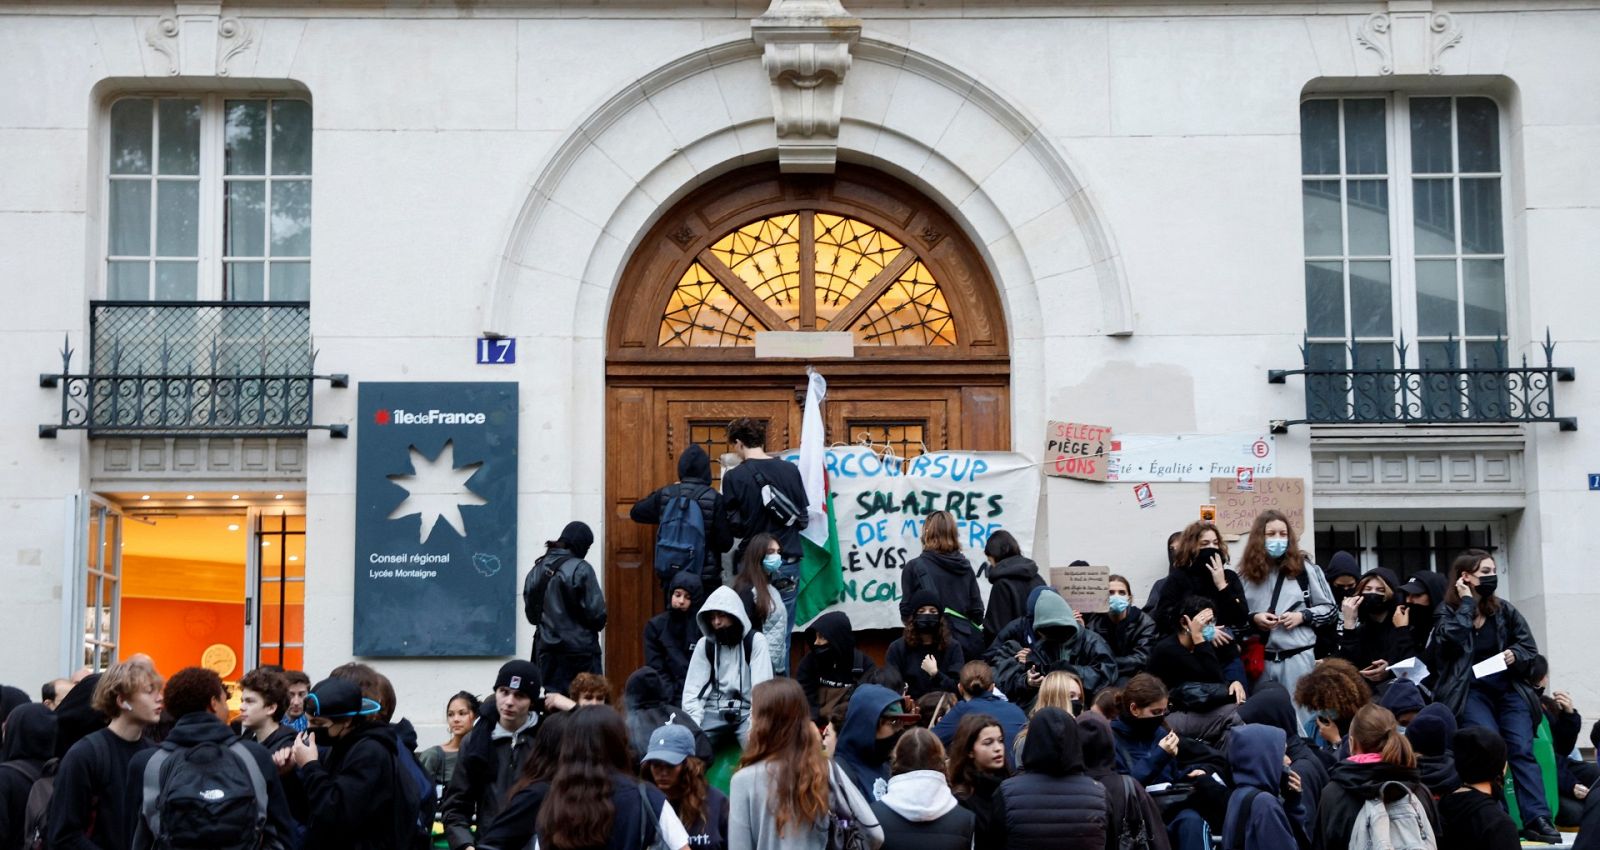 Hablamos con Mavi Doñate sobre la huelga en Francia: "De momento, hay cierta normalidad" - Ver ahora